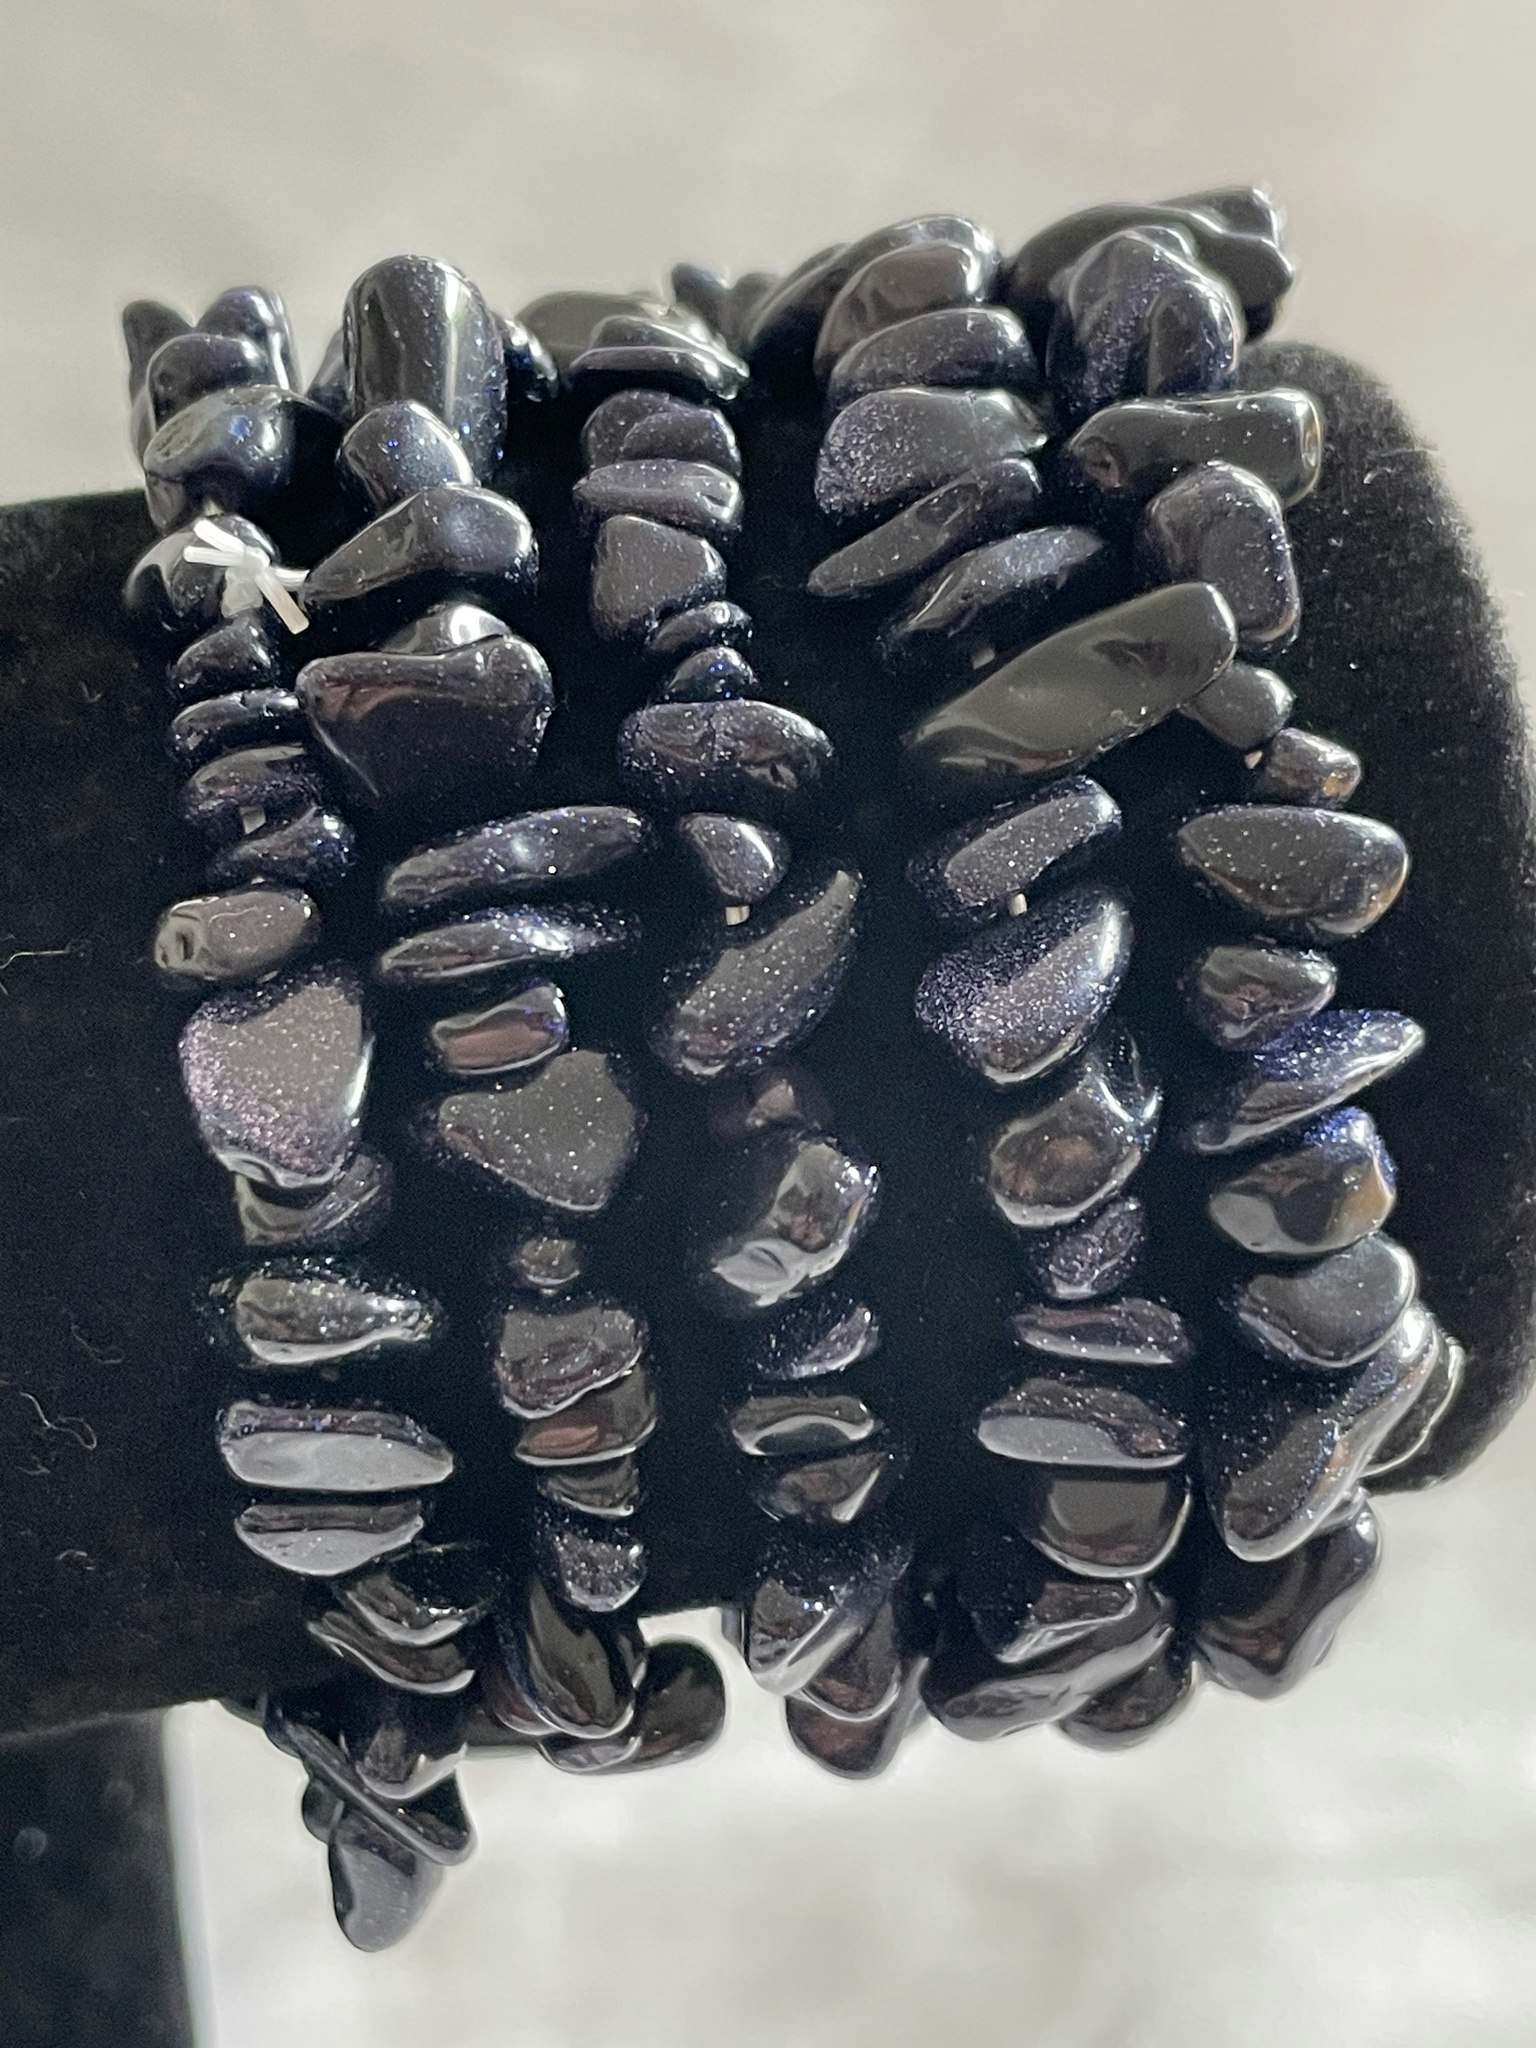 på bilden visas flera armband med blåglittriga stenar